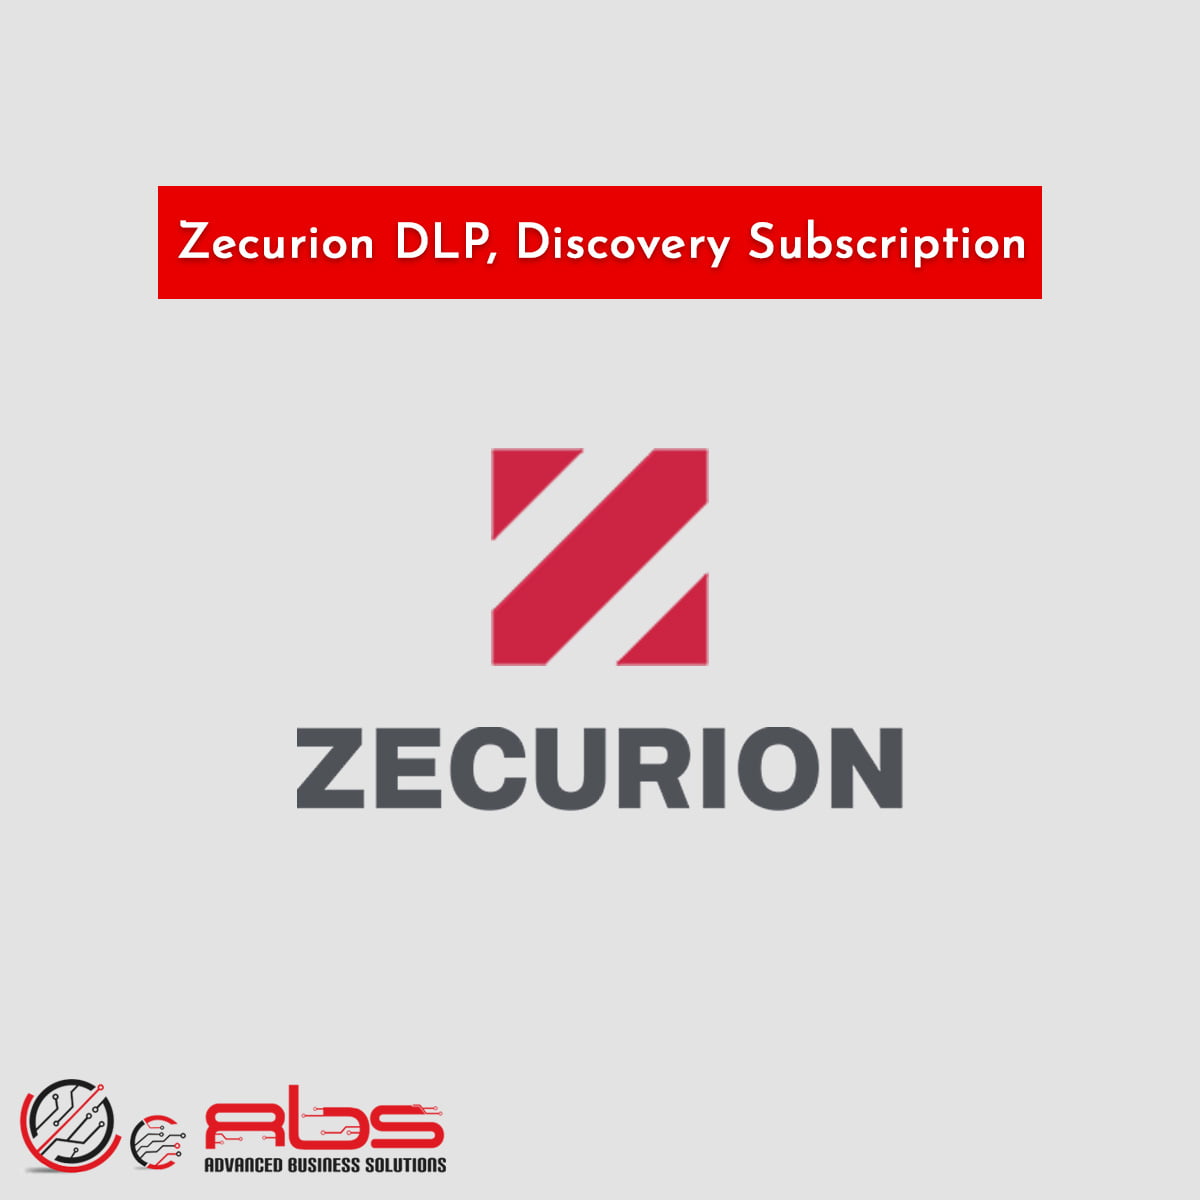 Zecurion DLP, Discovery Subscription